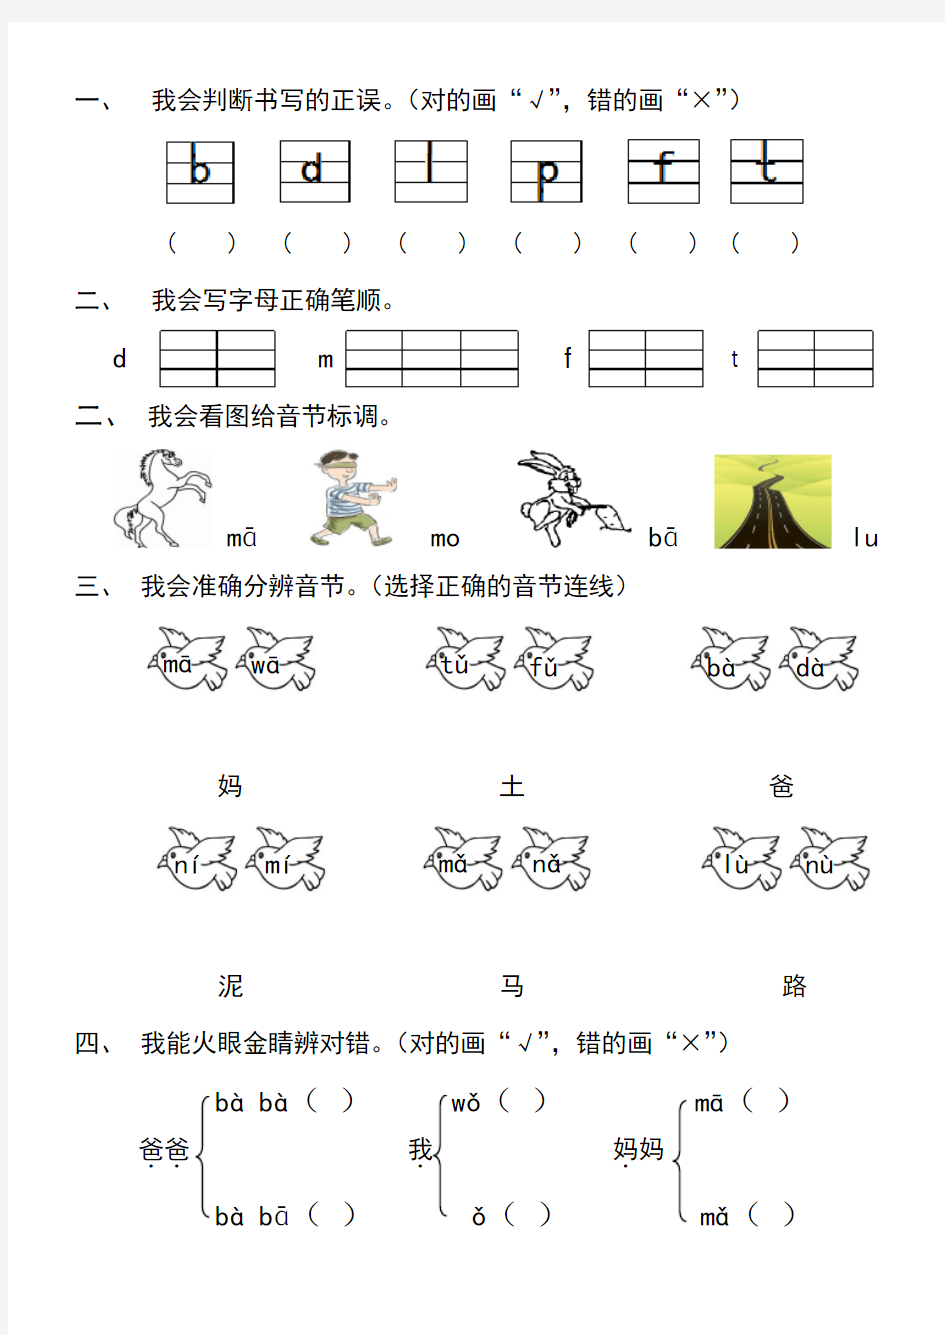 (完整版)汉语拼音bpmfdtnl练习